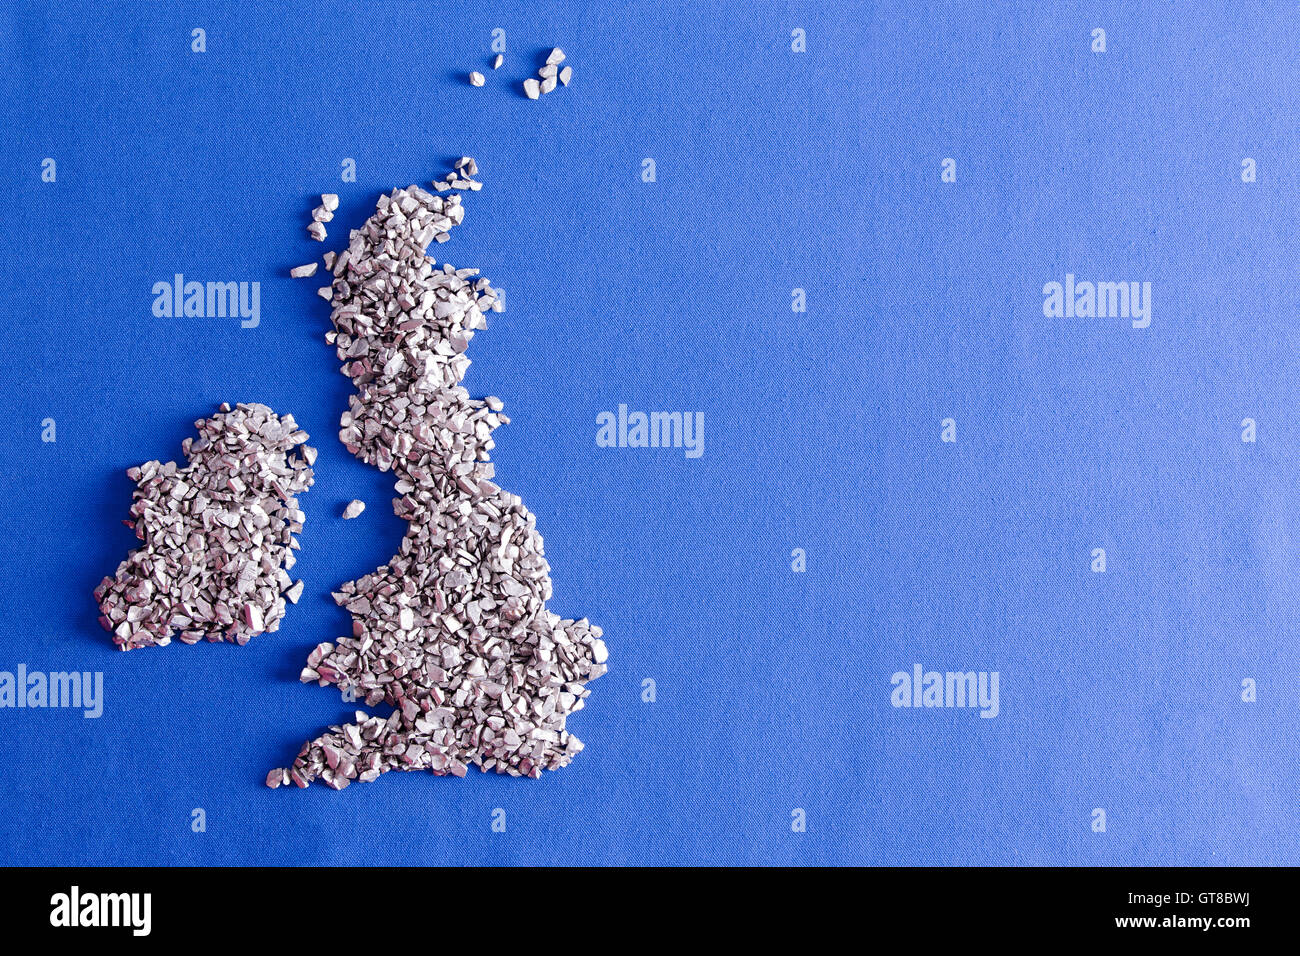 Konzeptionelle Karte von Großbritannien und Irland gebildet von silbernen Ziersteine über einem blauen Textil-Hintergrund Stockfoto